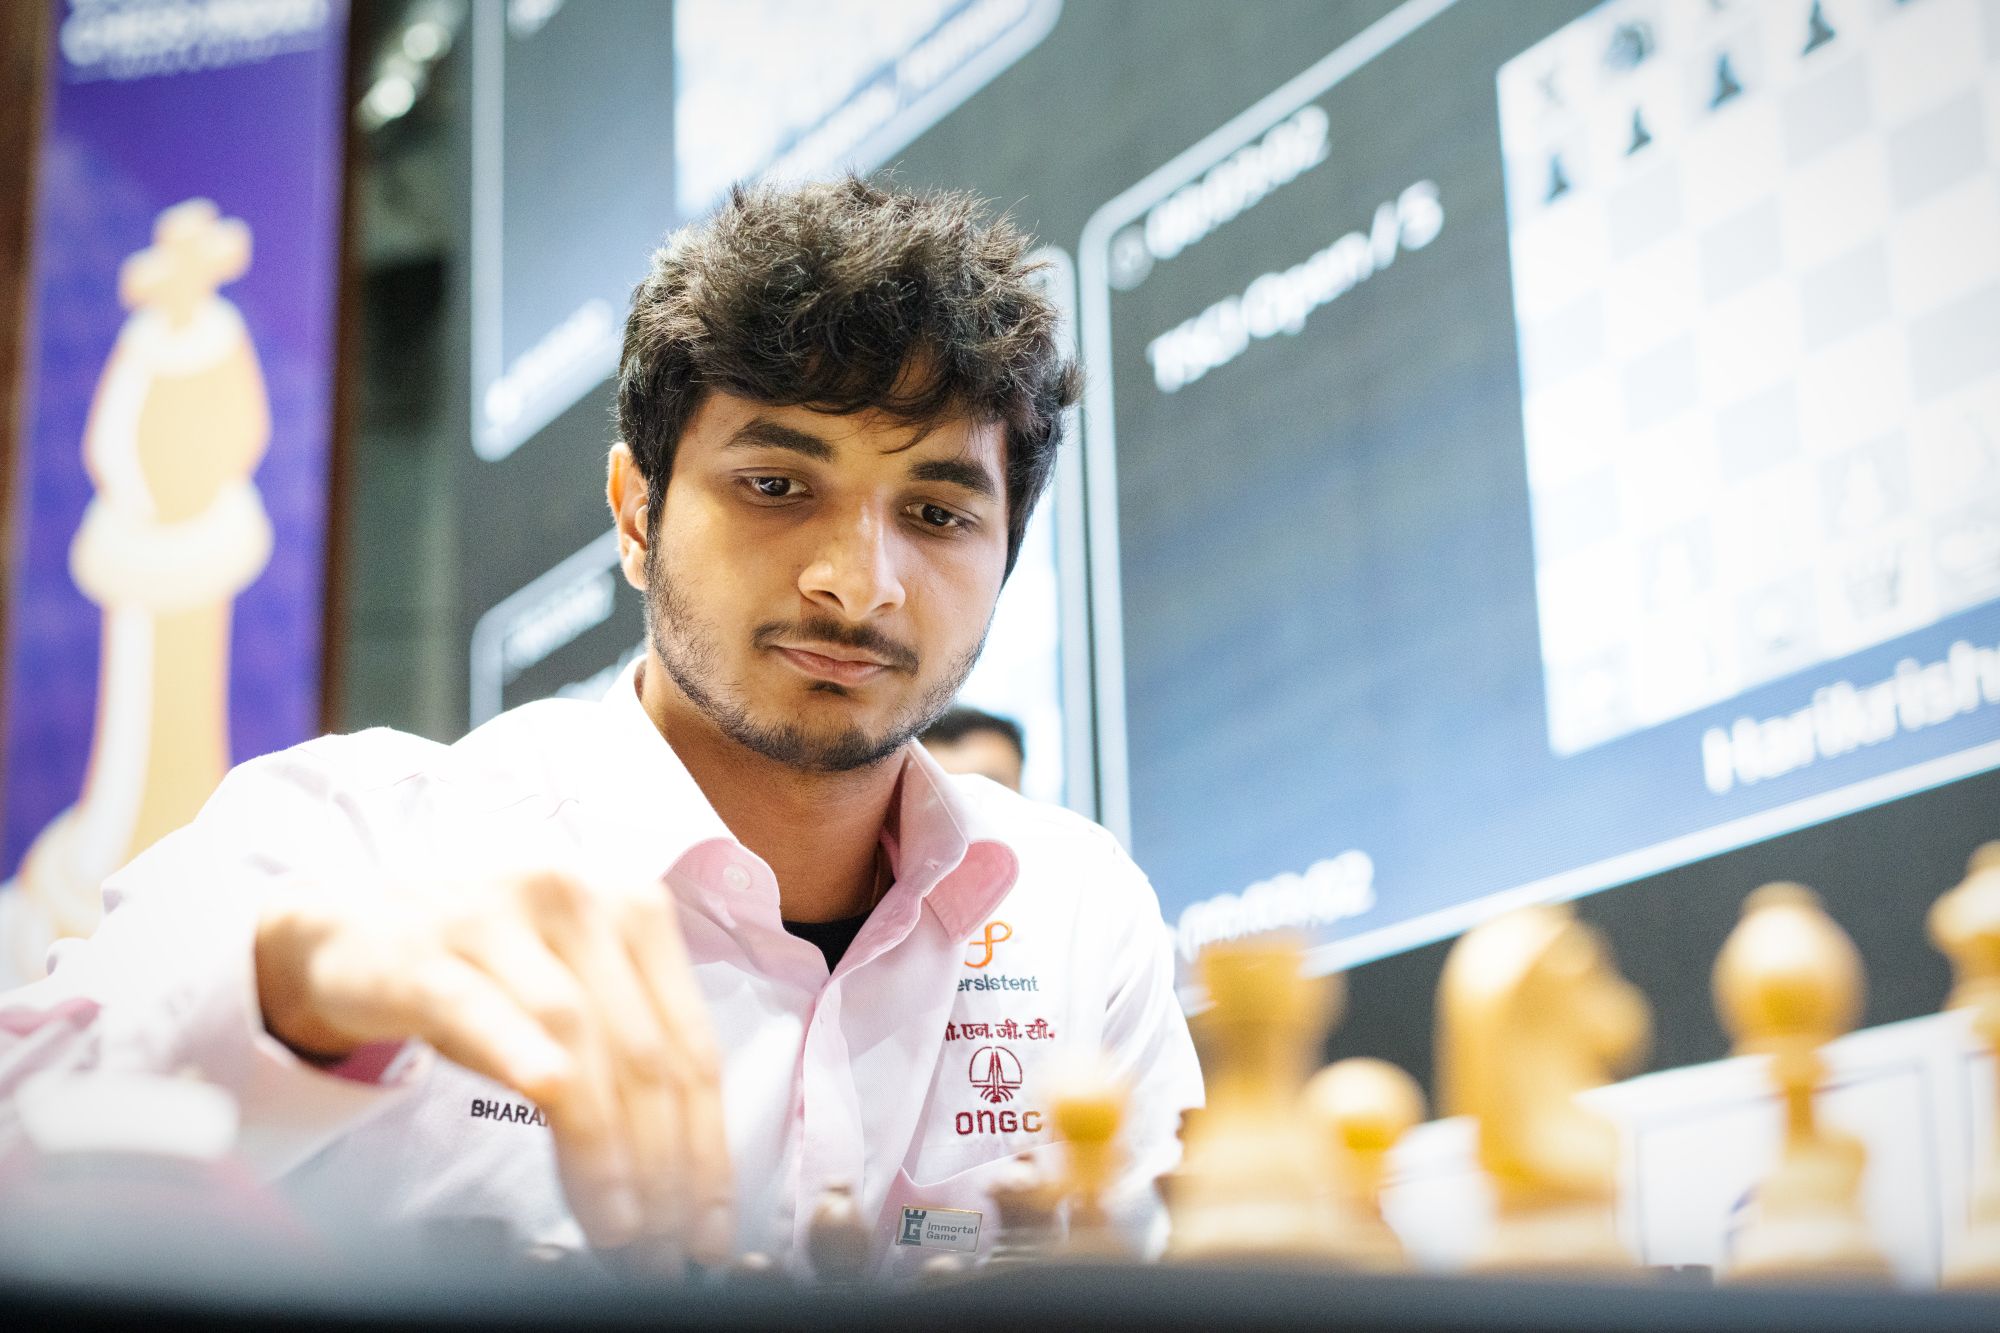 SPOILER] The winner of Tata Steel Blitz 2023 : r/chess